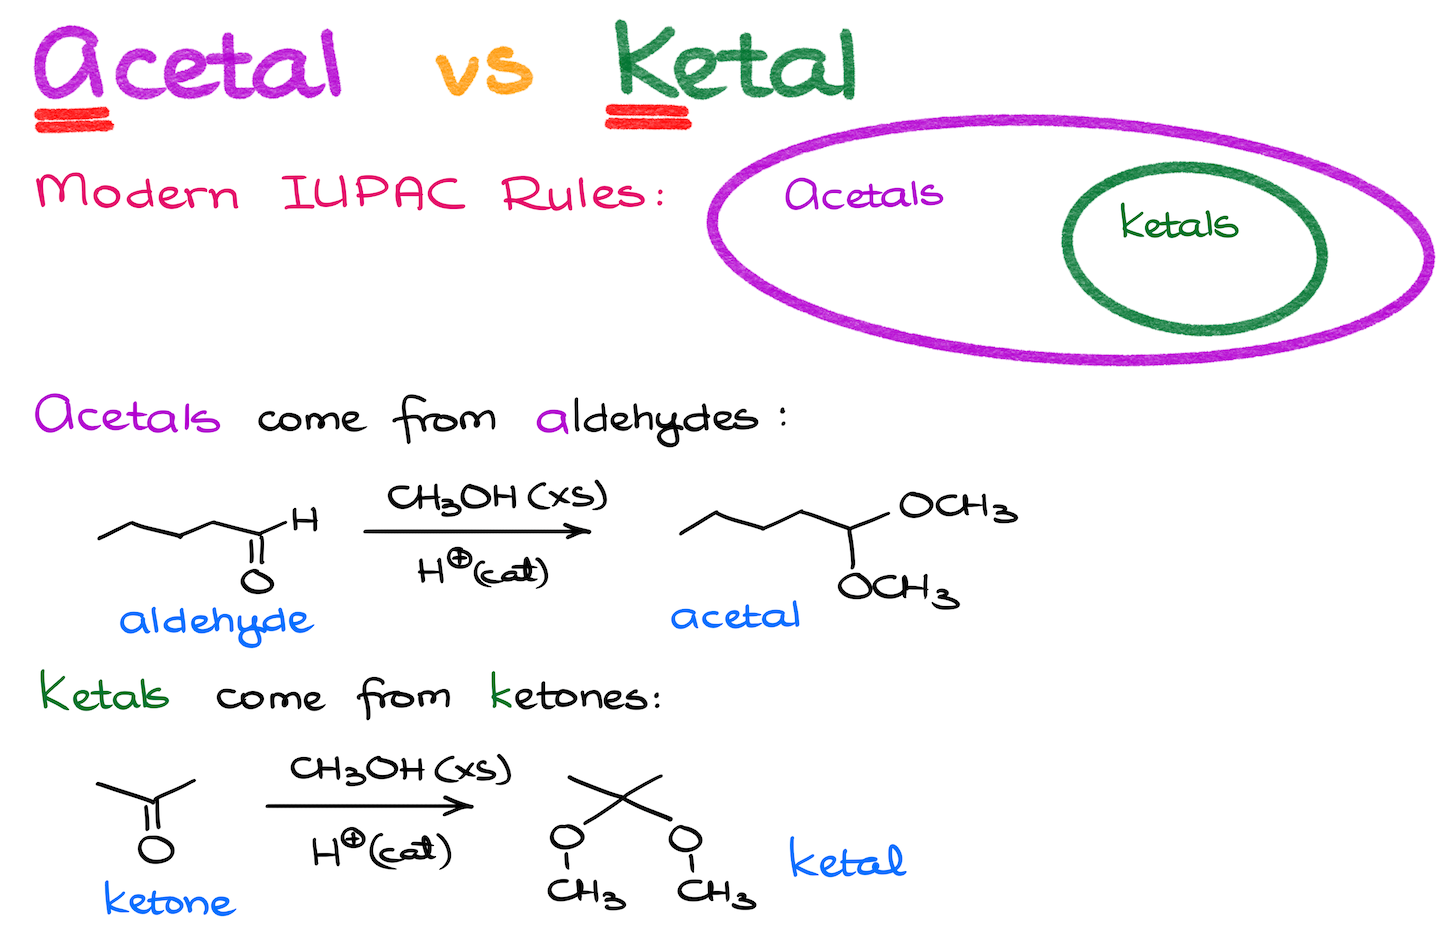 acetal vs ketal